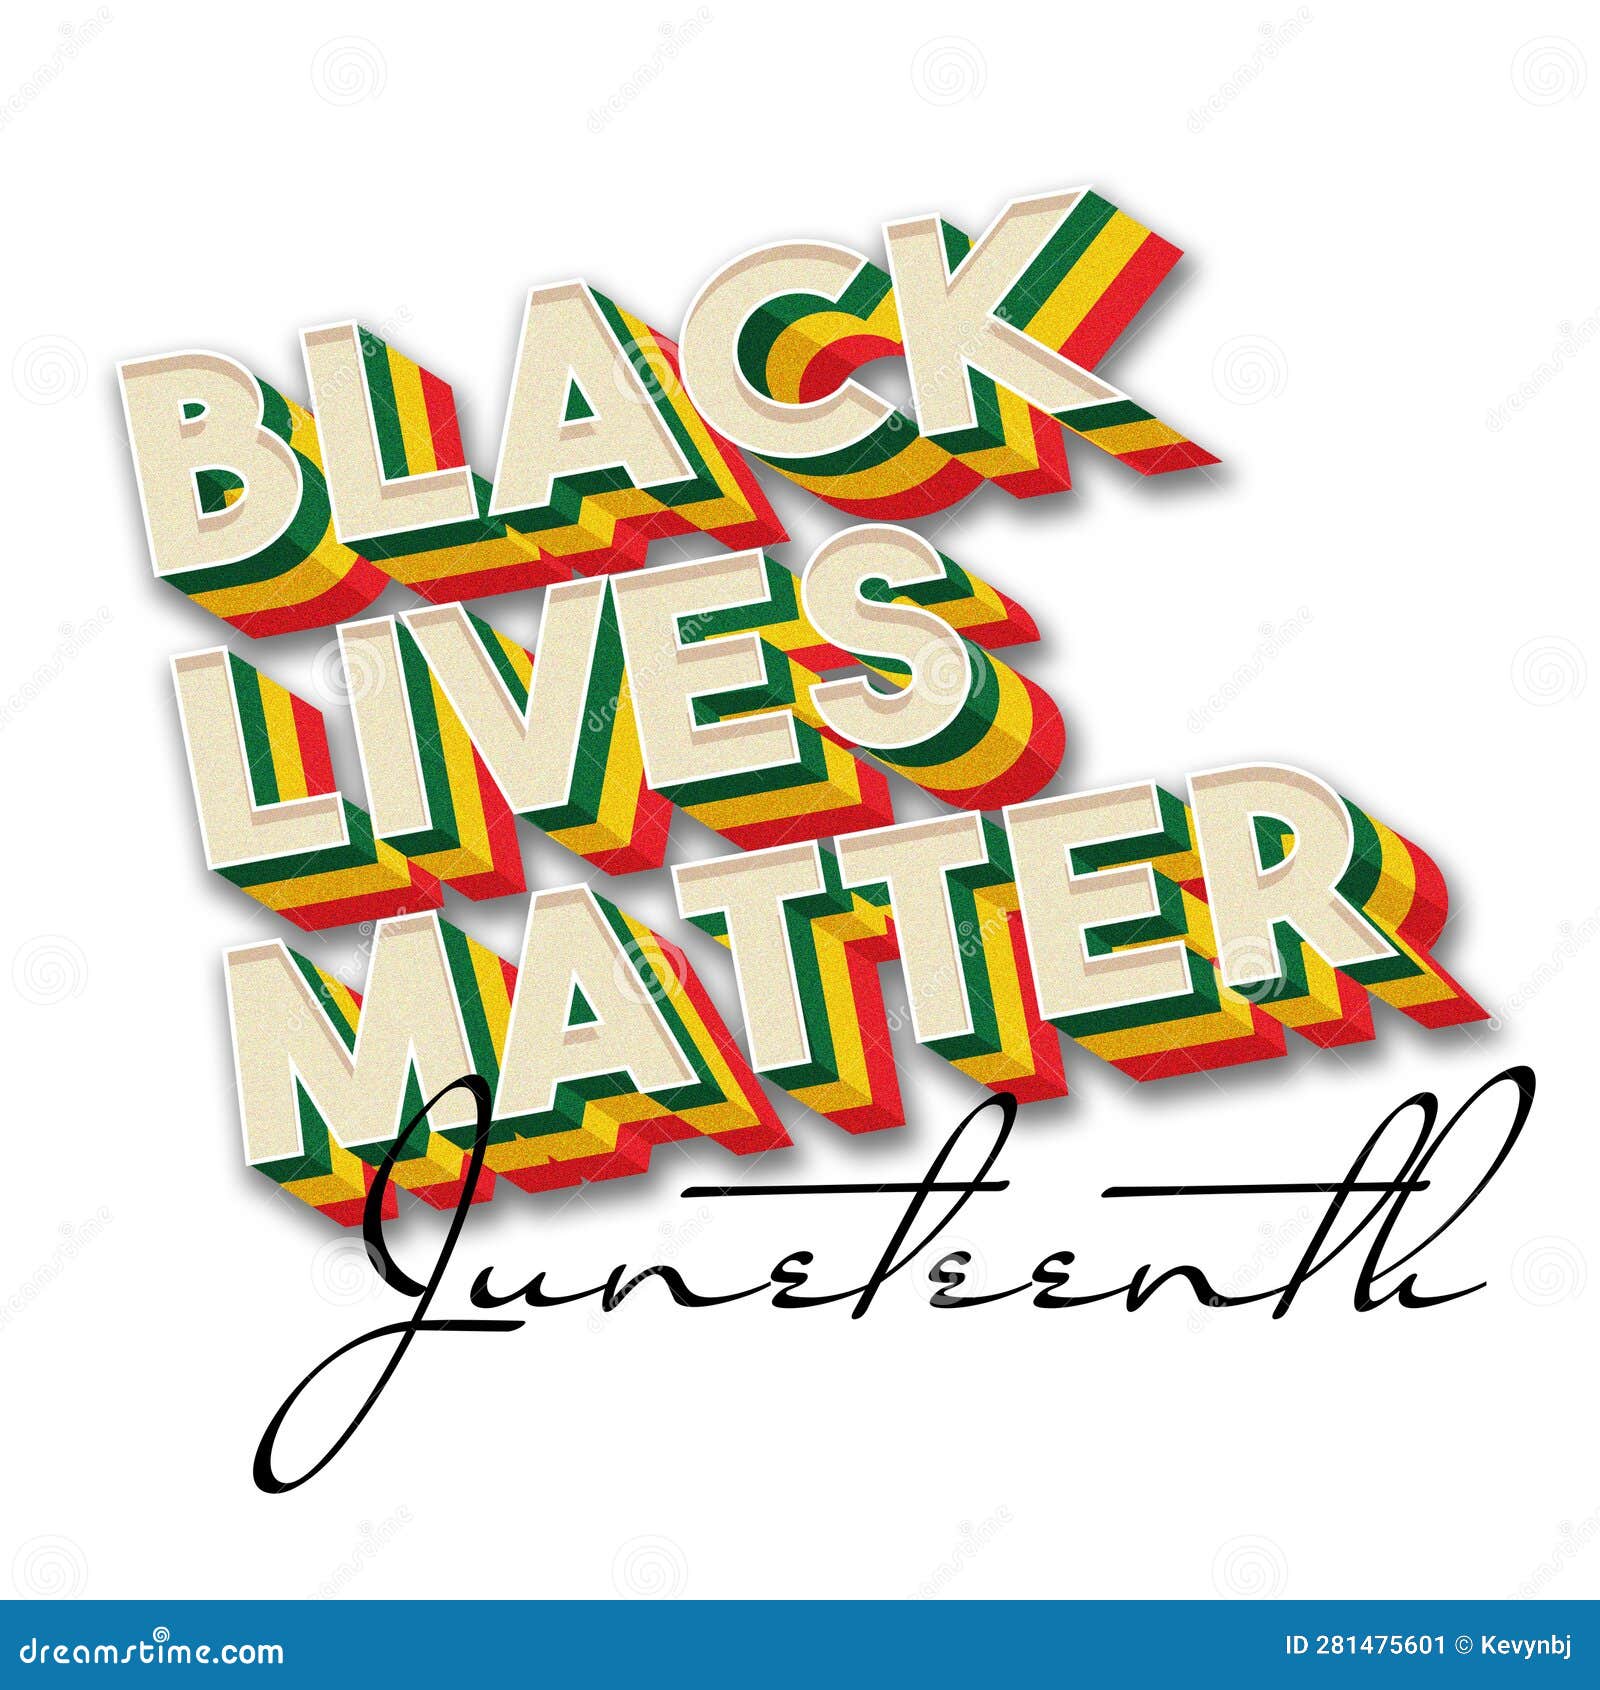 juneteenth black lives matter logo font typeface 3d banner headline clipart blm